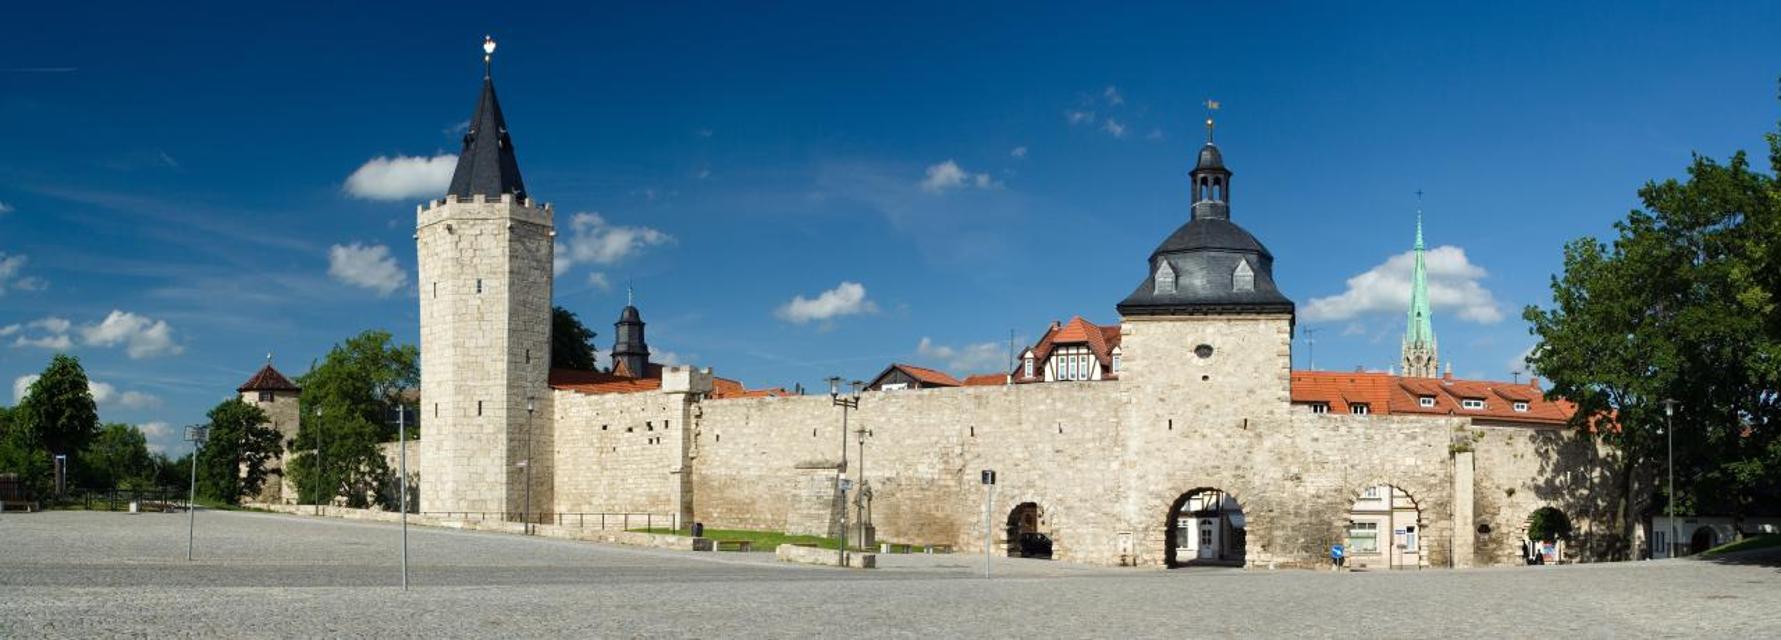 Die auf 2,2 km erhaltene Stadtmauer verdeutlicht die Wehrhaftigkeit und Bedeutung der einstigen freien Reichsstadt. Mühlhausen verfügt damit über eine nahezu vollständig erhaltene Verteidigungsanlage. Sie lässt sich auf einer Länge von 370 Metern ...